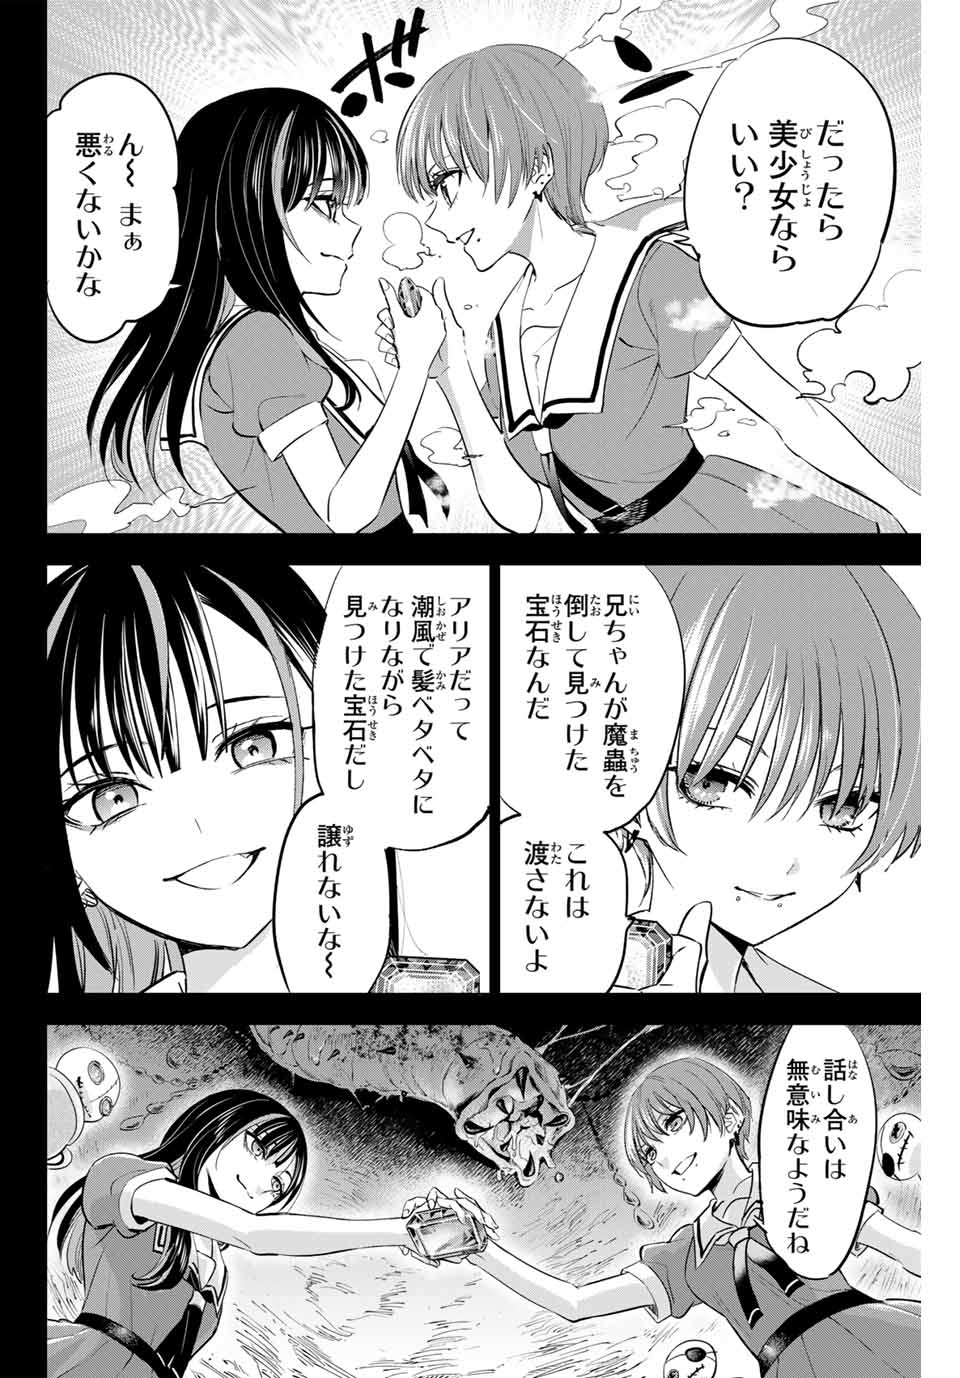 Kuroneko to Majo no Kyoushitsu - Chapter 47 - Page 4